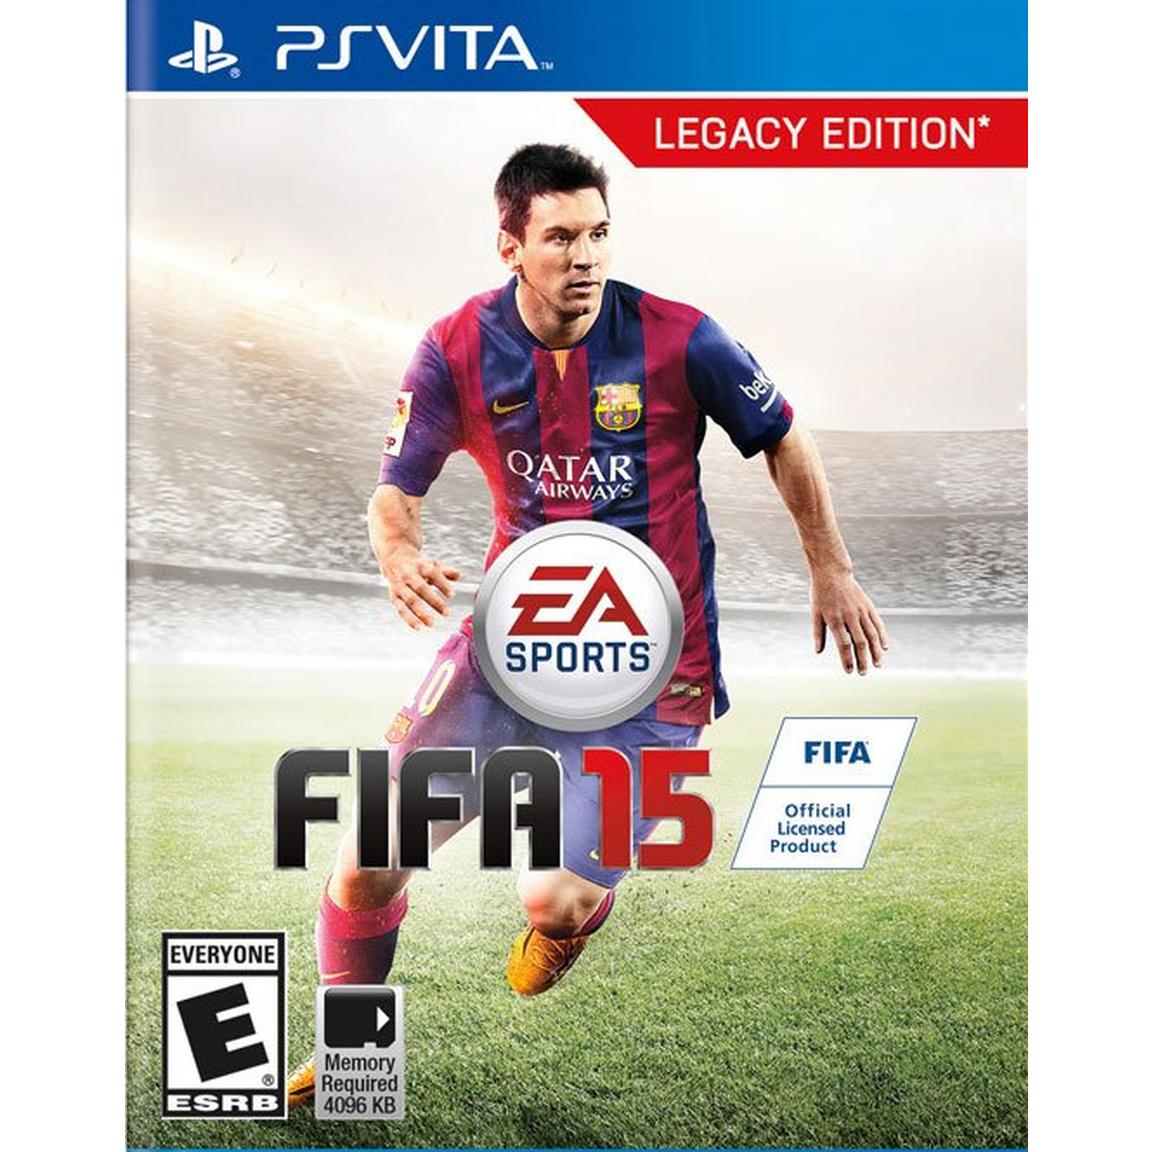 FIFA 15 - PS Vita, Pre-Owned